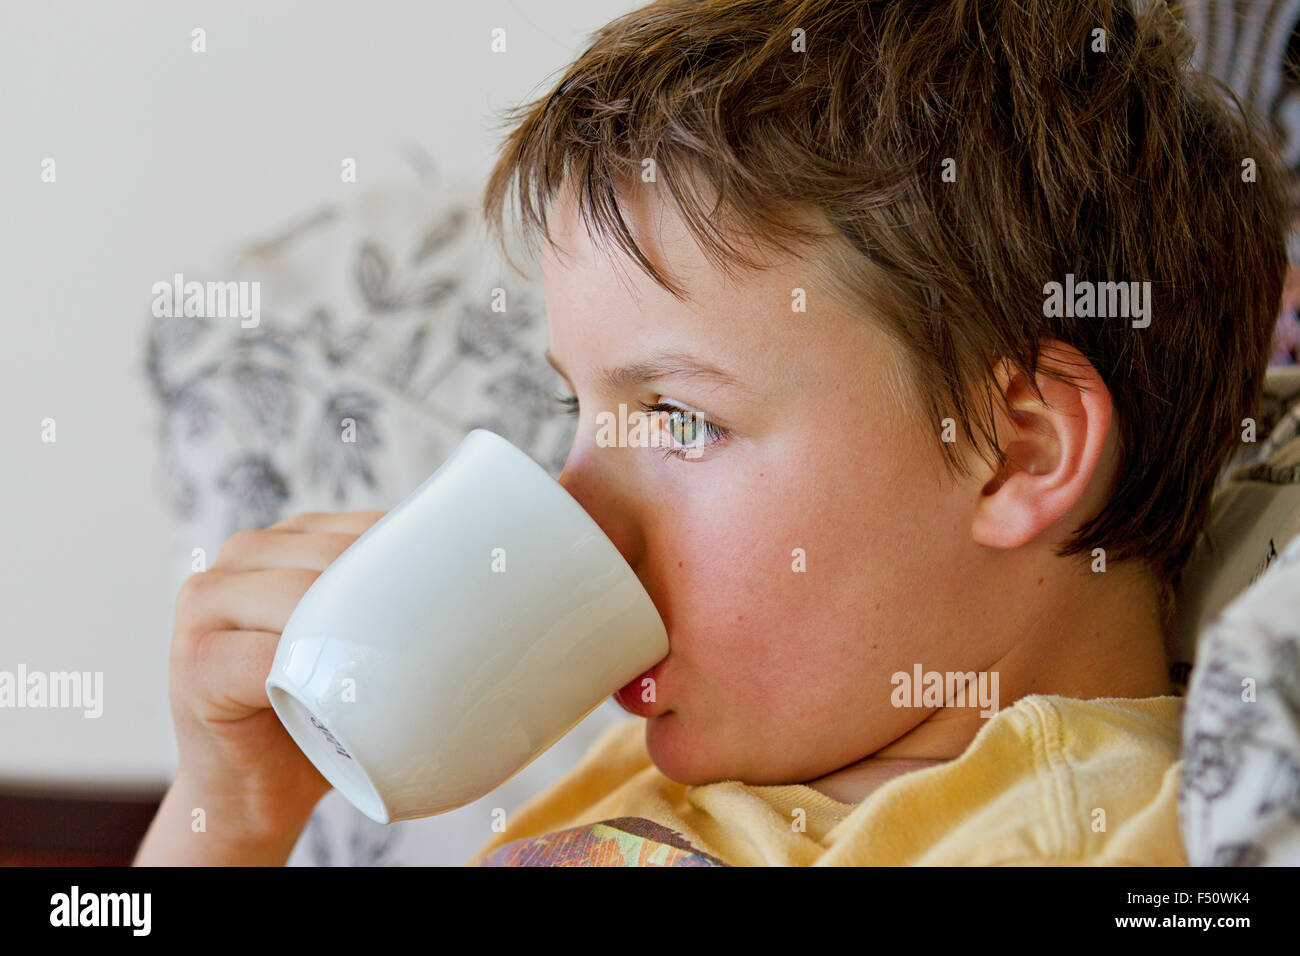 Ein zehn Jahre alter Junge bei einem heißen Getränk Stockfoto